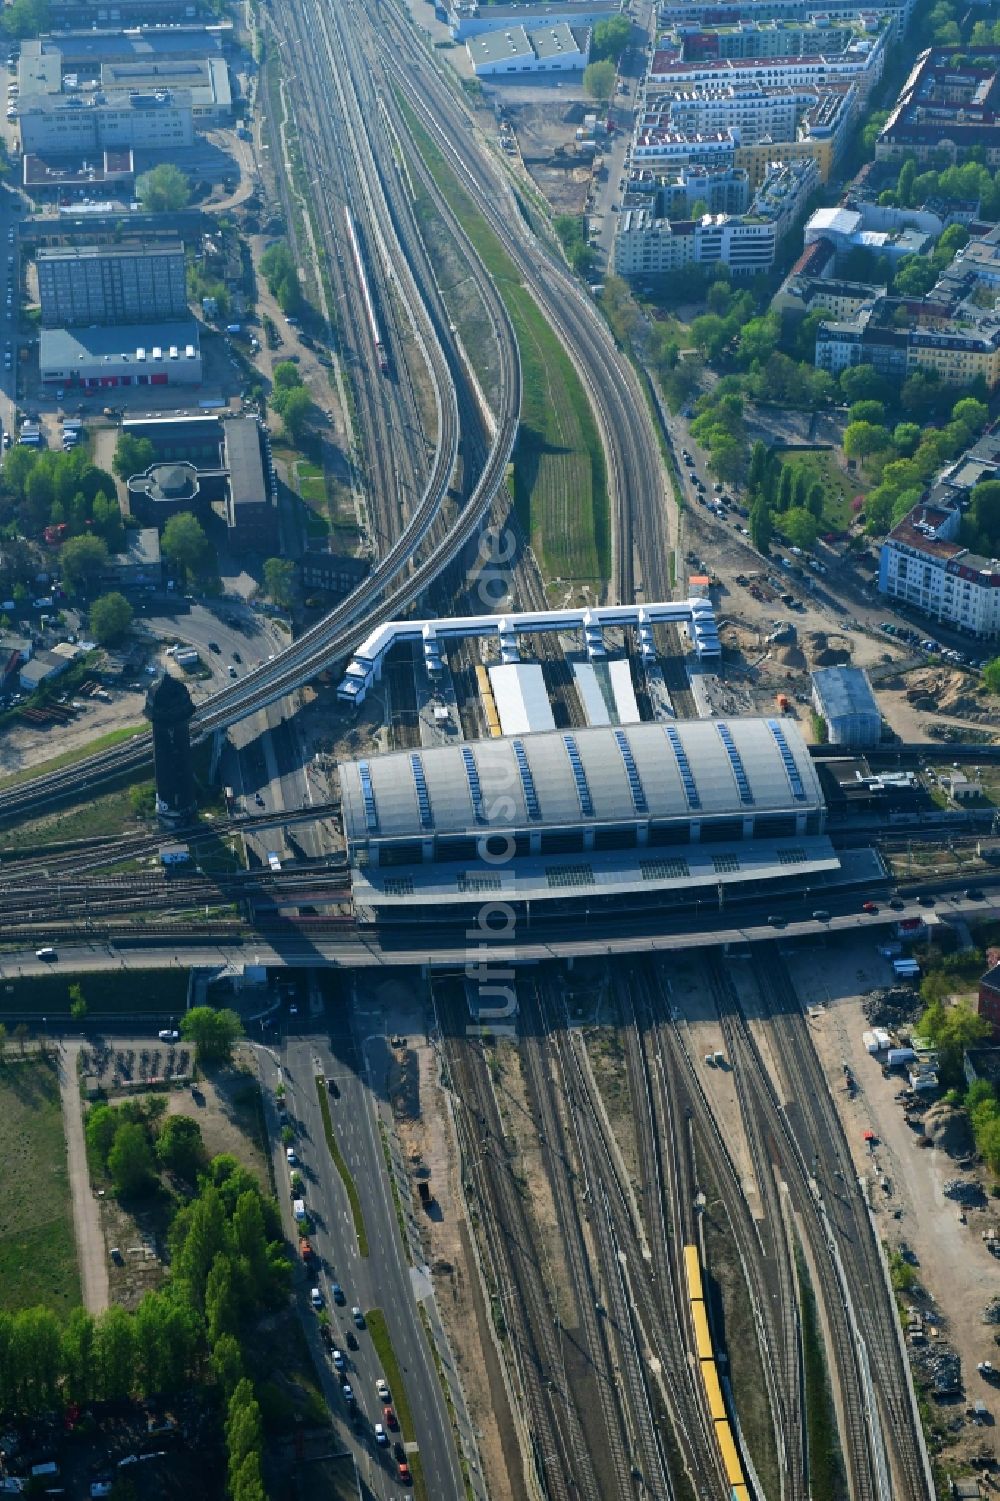 Luftaufnahme Berlin - Strecken- Ausbau am Bahnhof Ostkreuz im Stadtteil Friedrichshain von Berlin